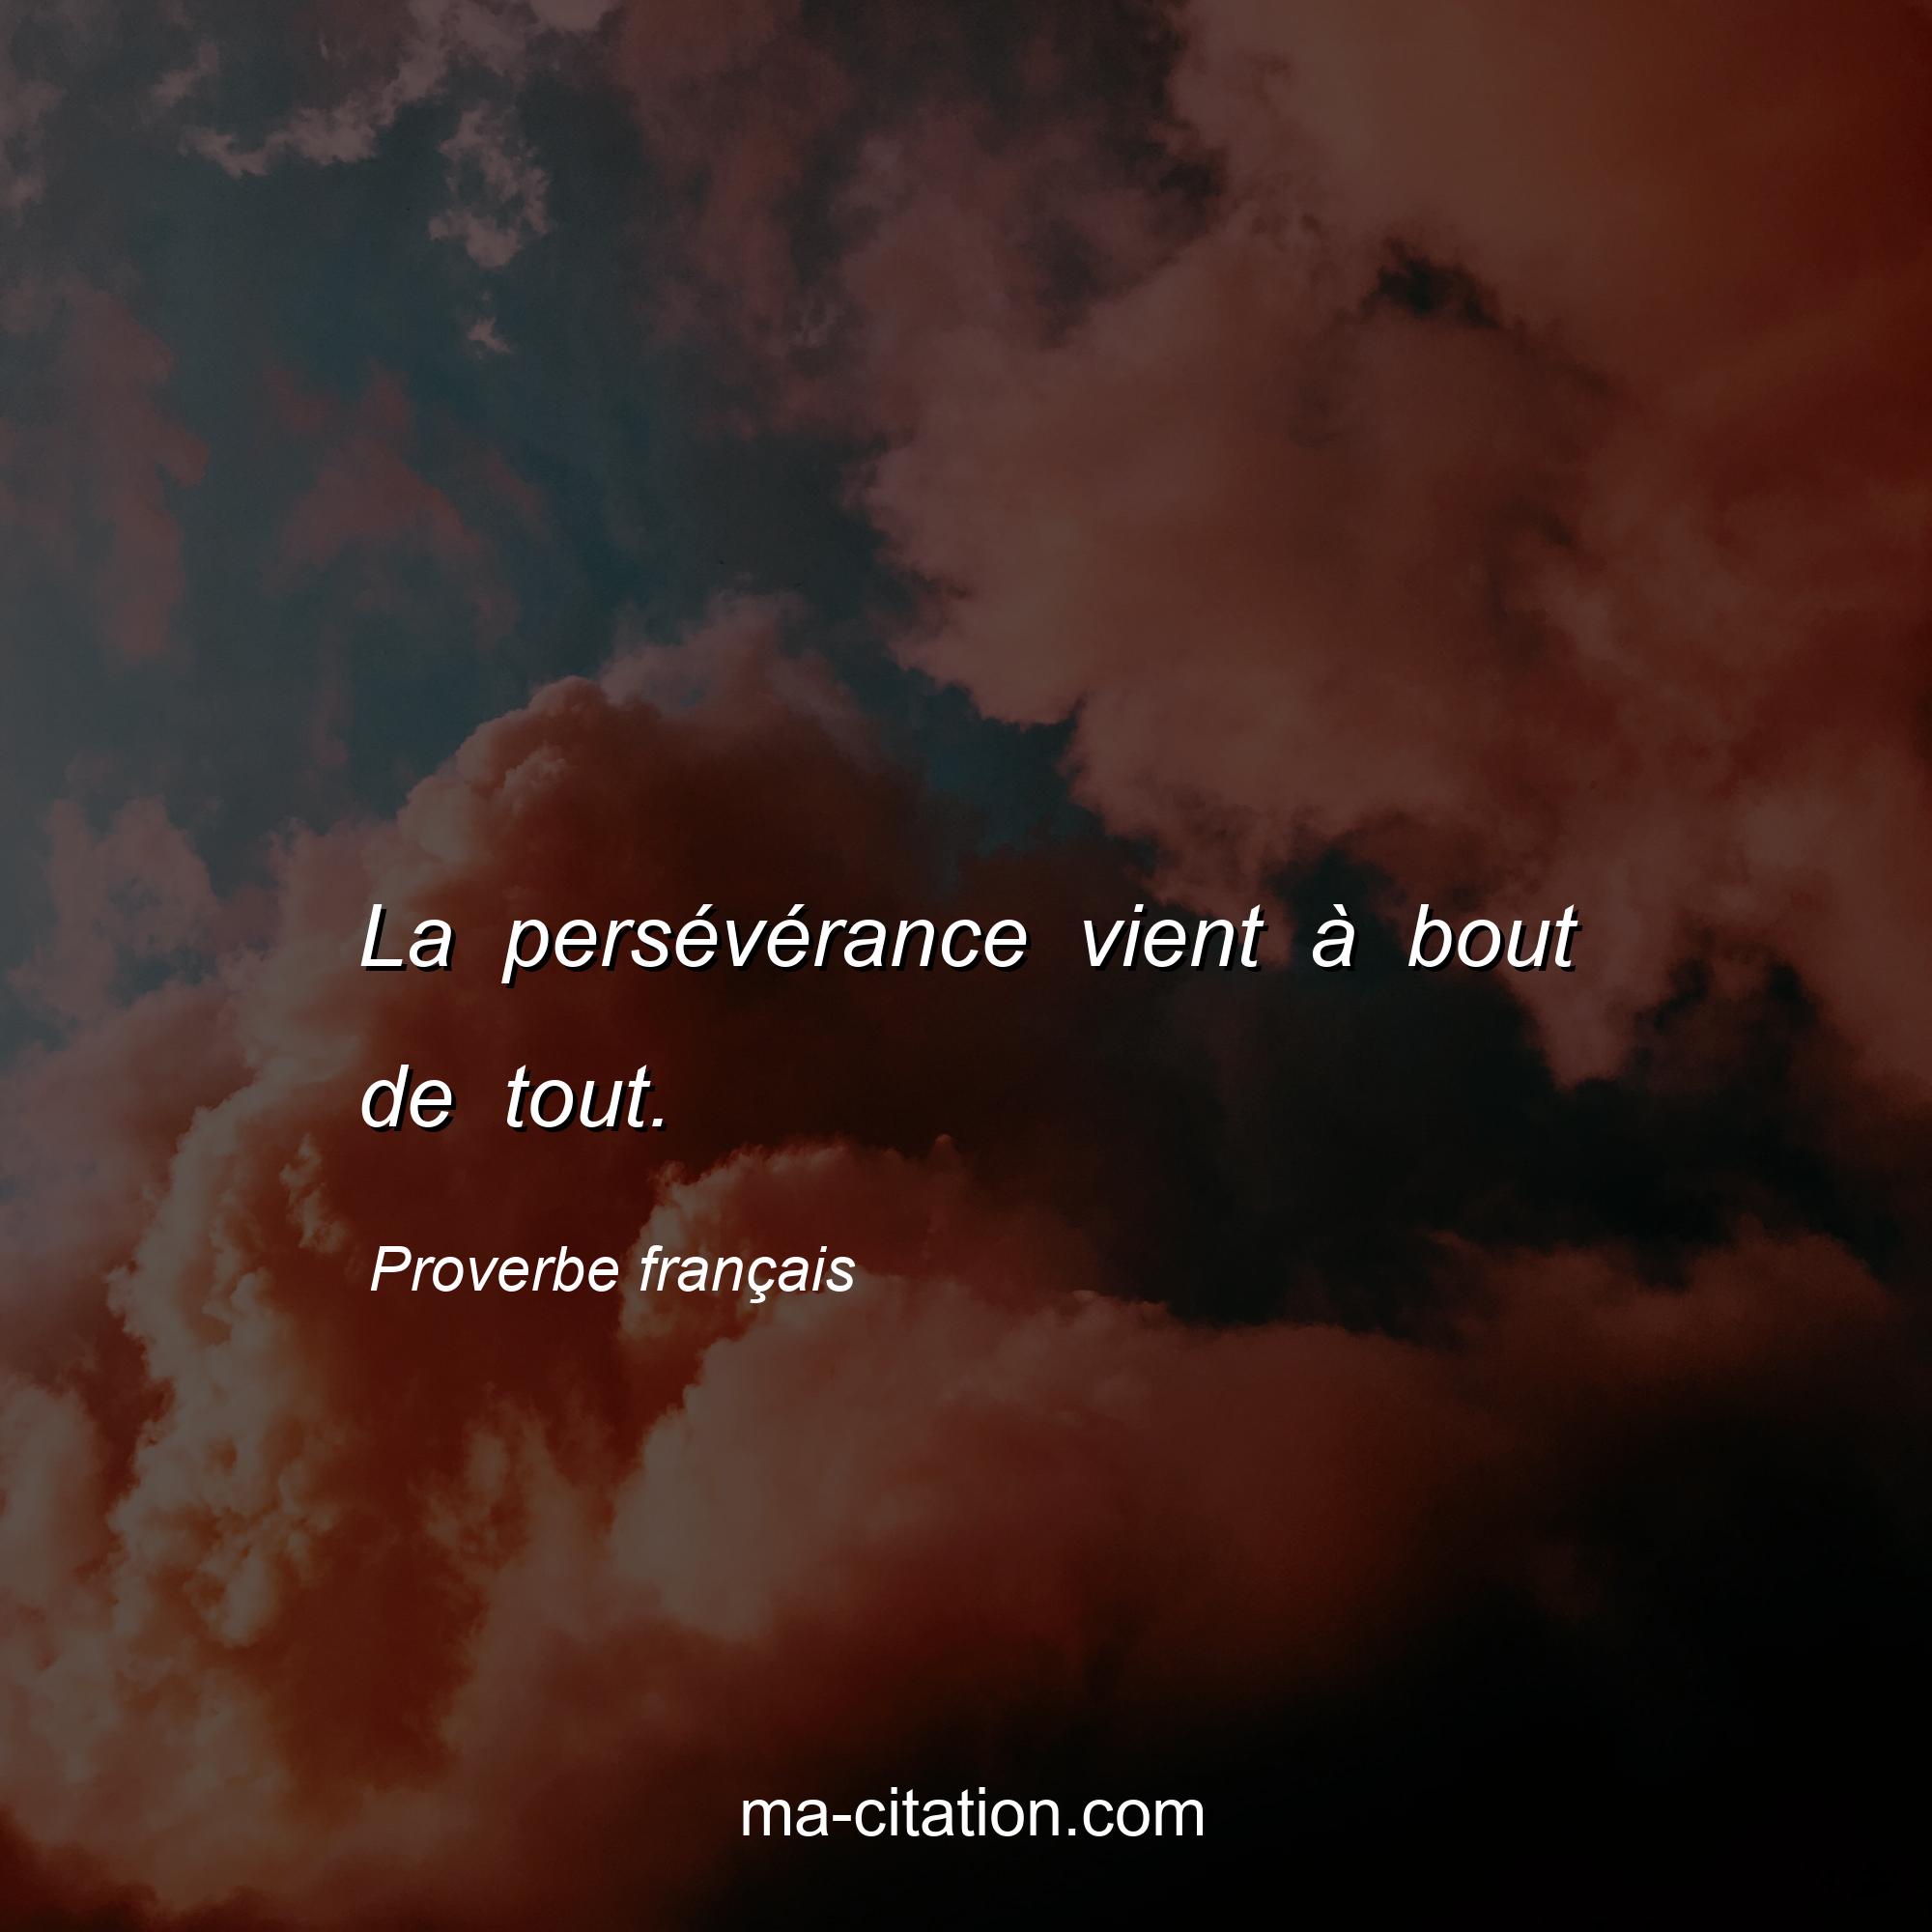 Proverbe français : La persévérance vient à bout de tout.